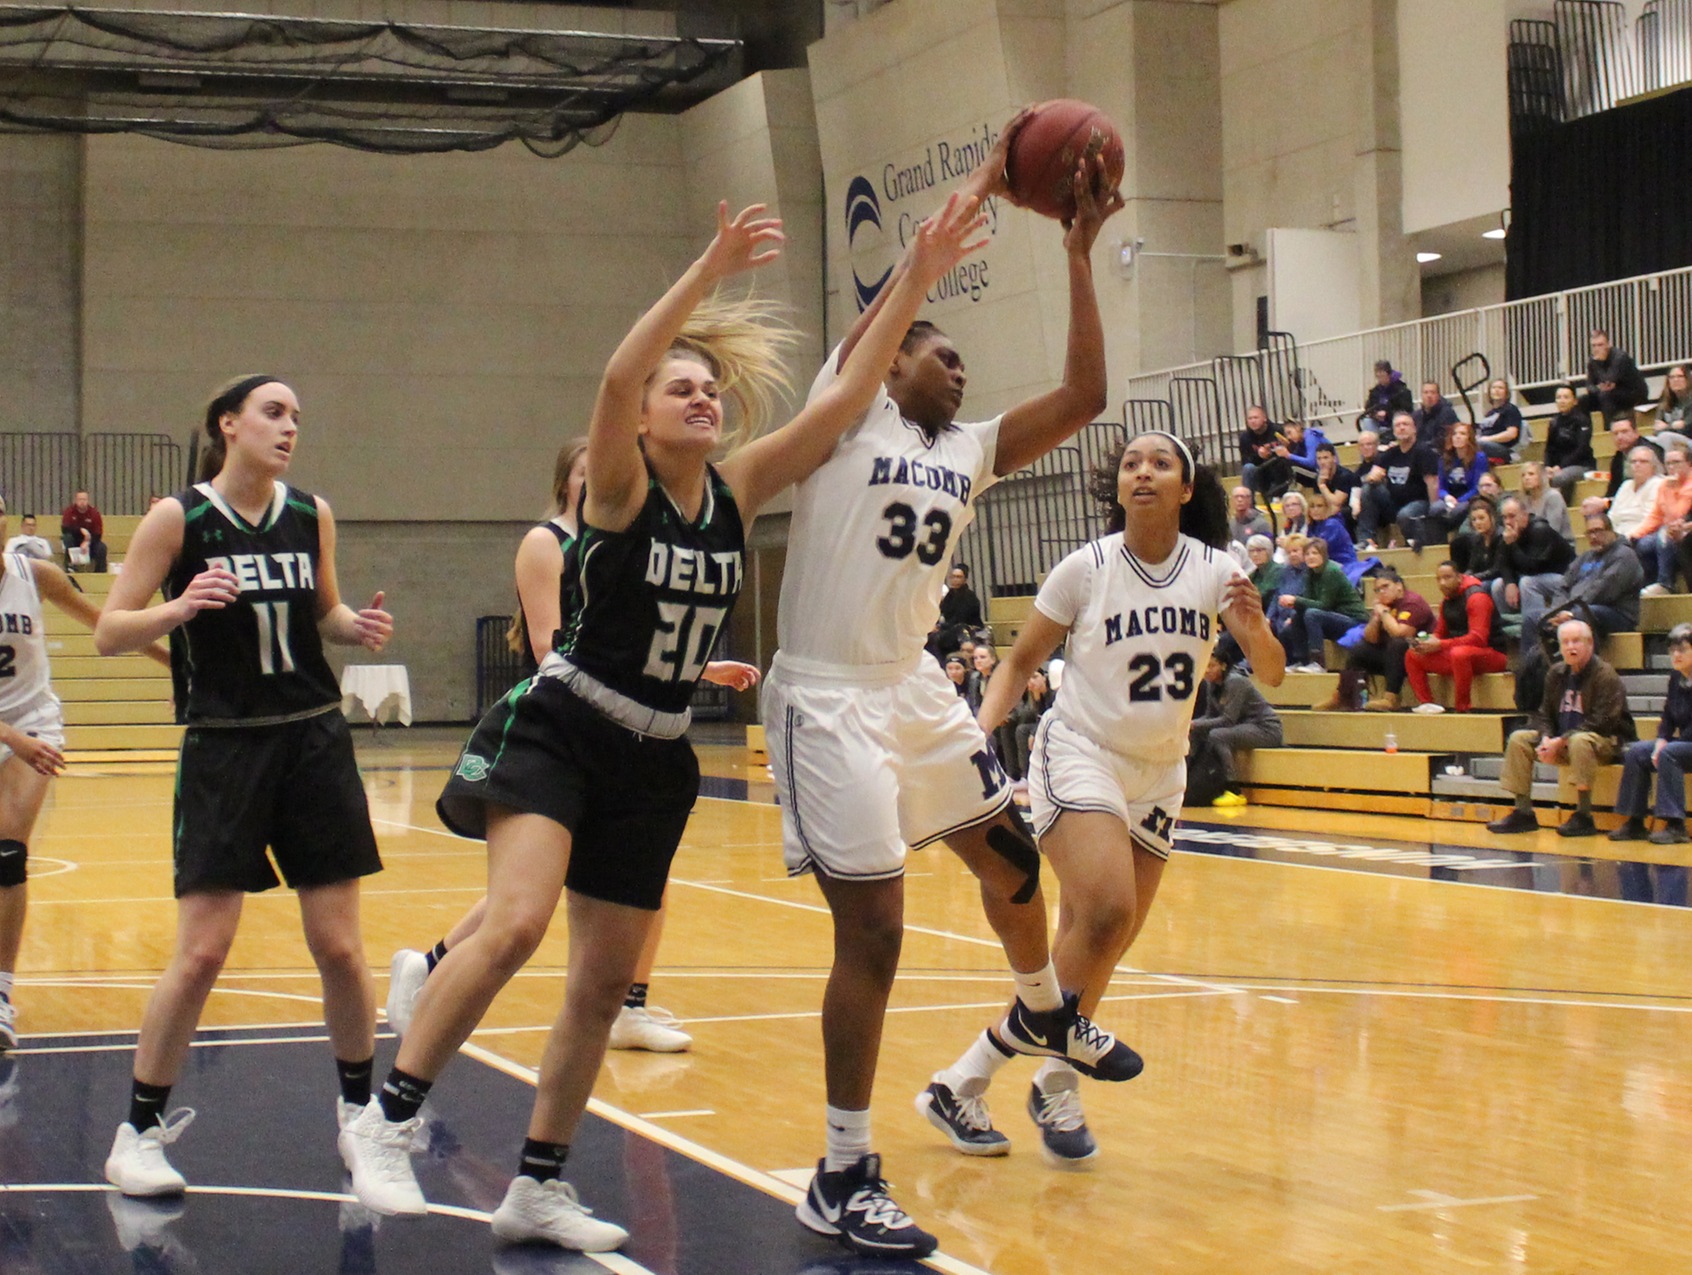 Macomb's Lauren Wynn grabs a rebound against Delta College